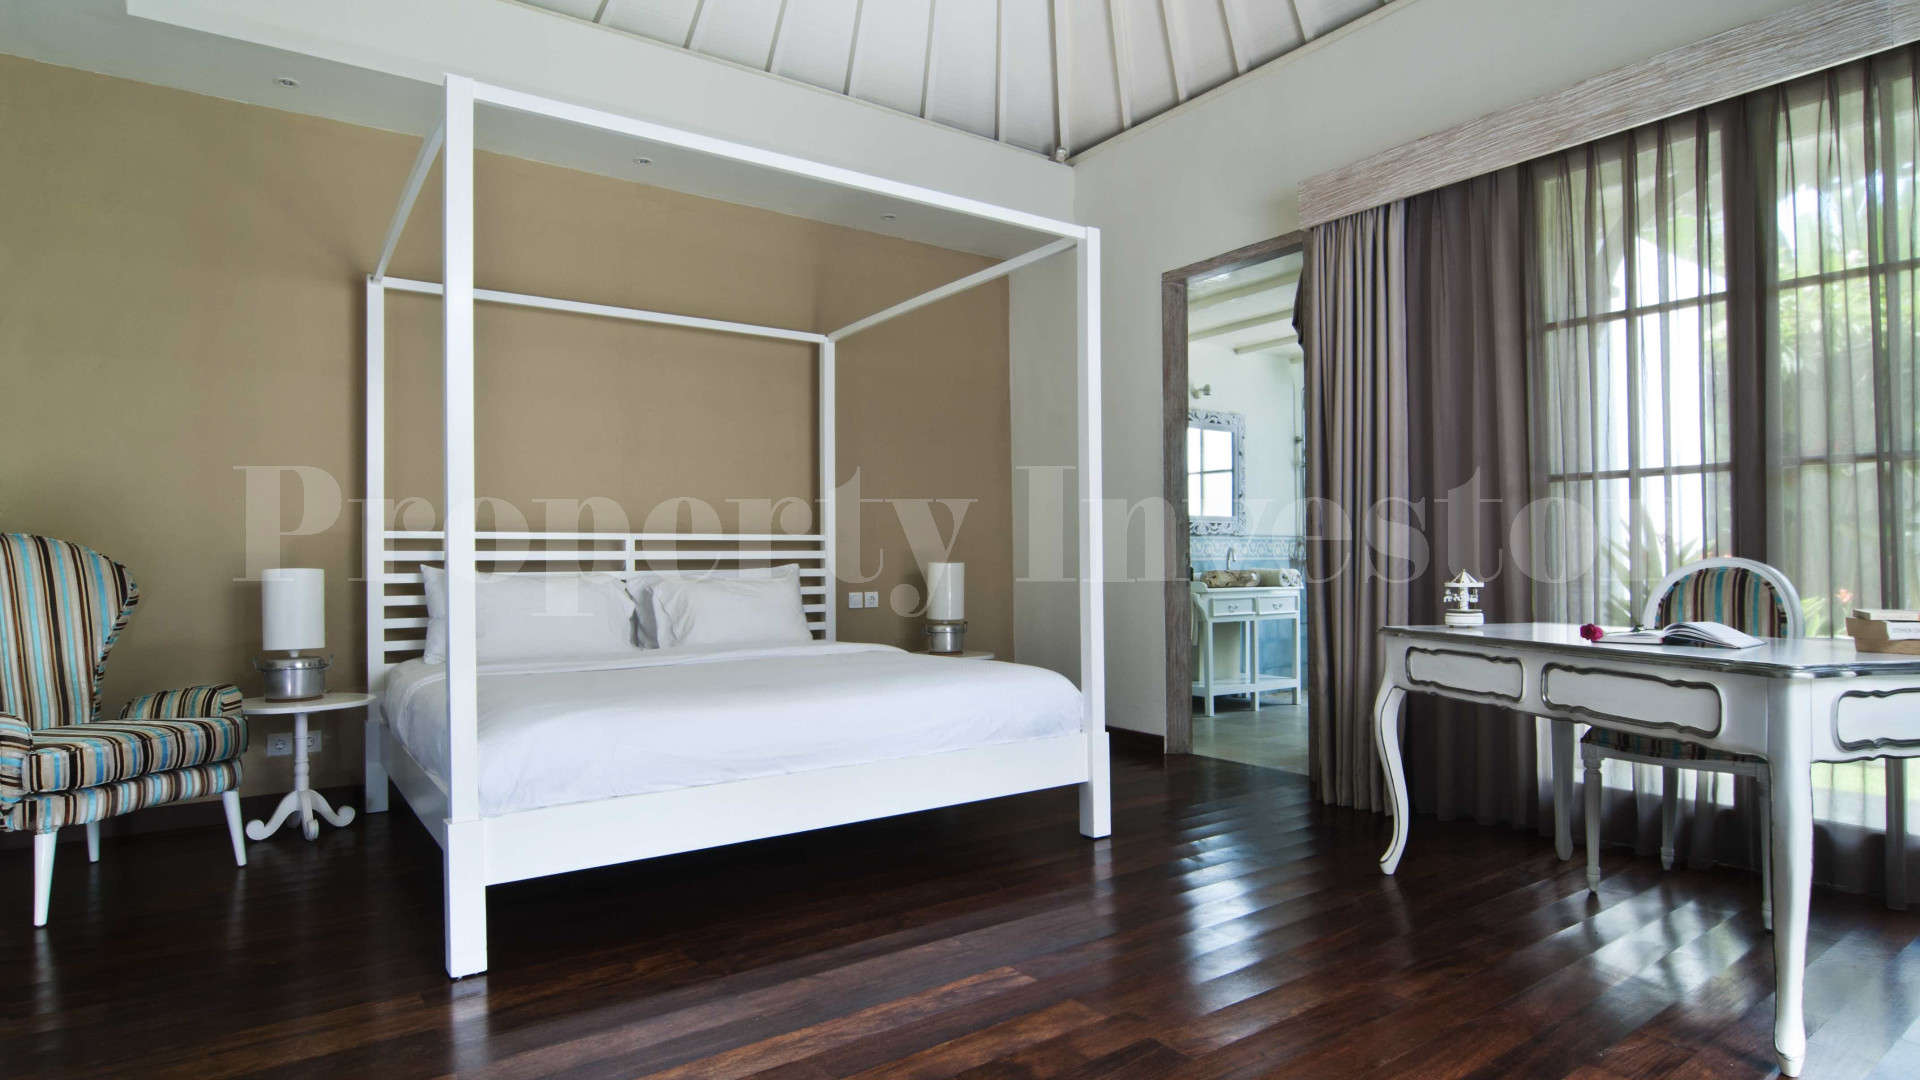 Элегантная вилла на 3 спальни в колониальном стиле на Бату Белиг Семиньяк, Бали